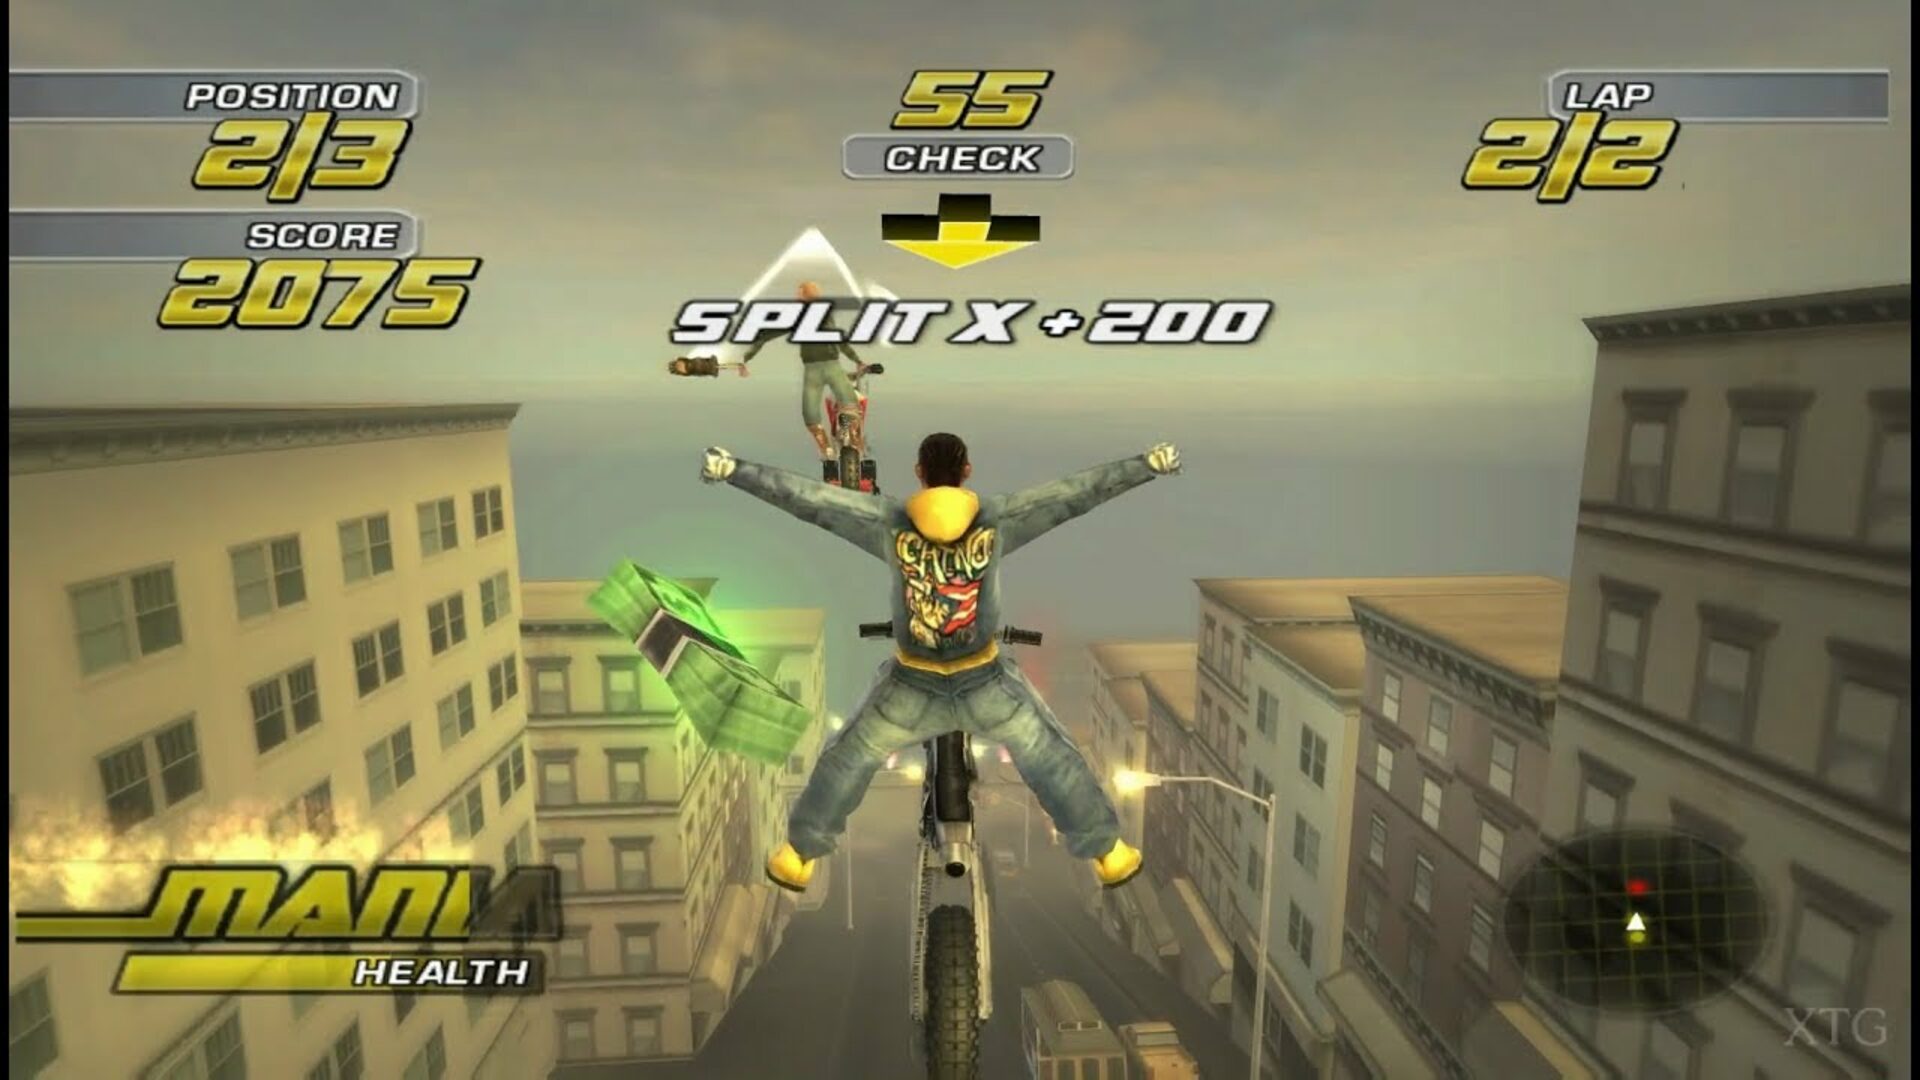 PS2 - Motocross Mania 3 em segunda mão durante 15 EUR em Iturribide na  WALLAPOP